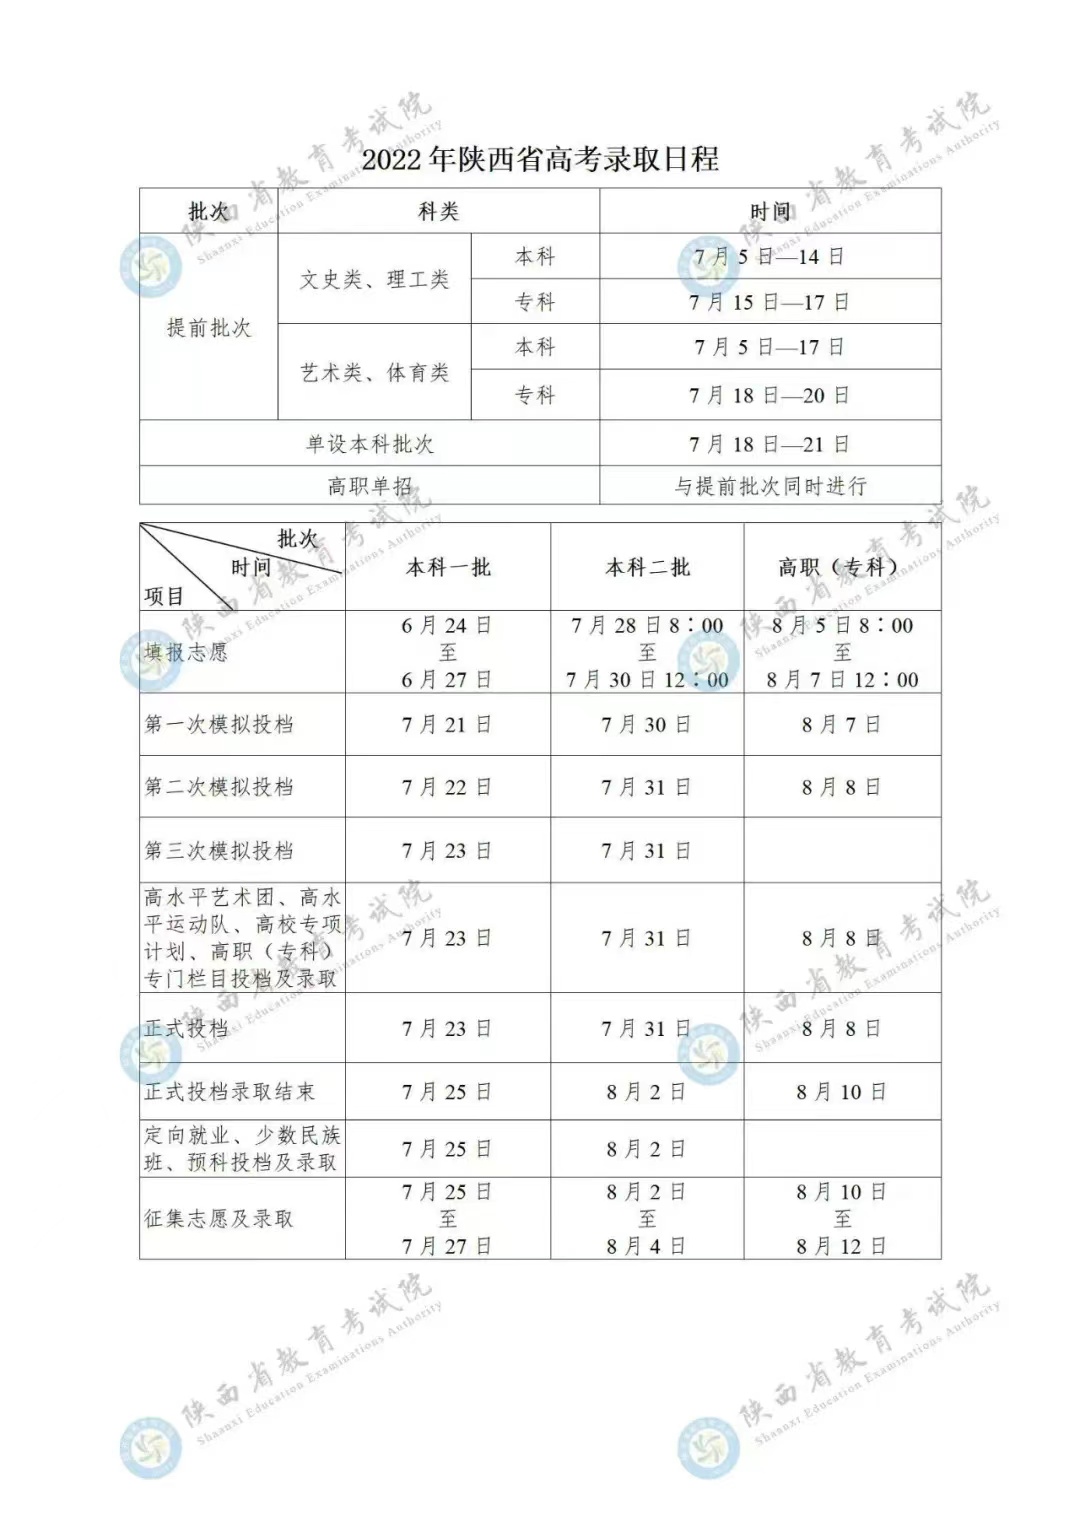 2022年陕西省高考录取日程